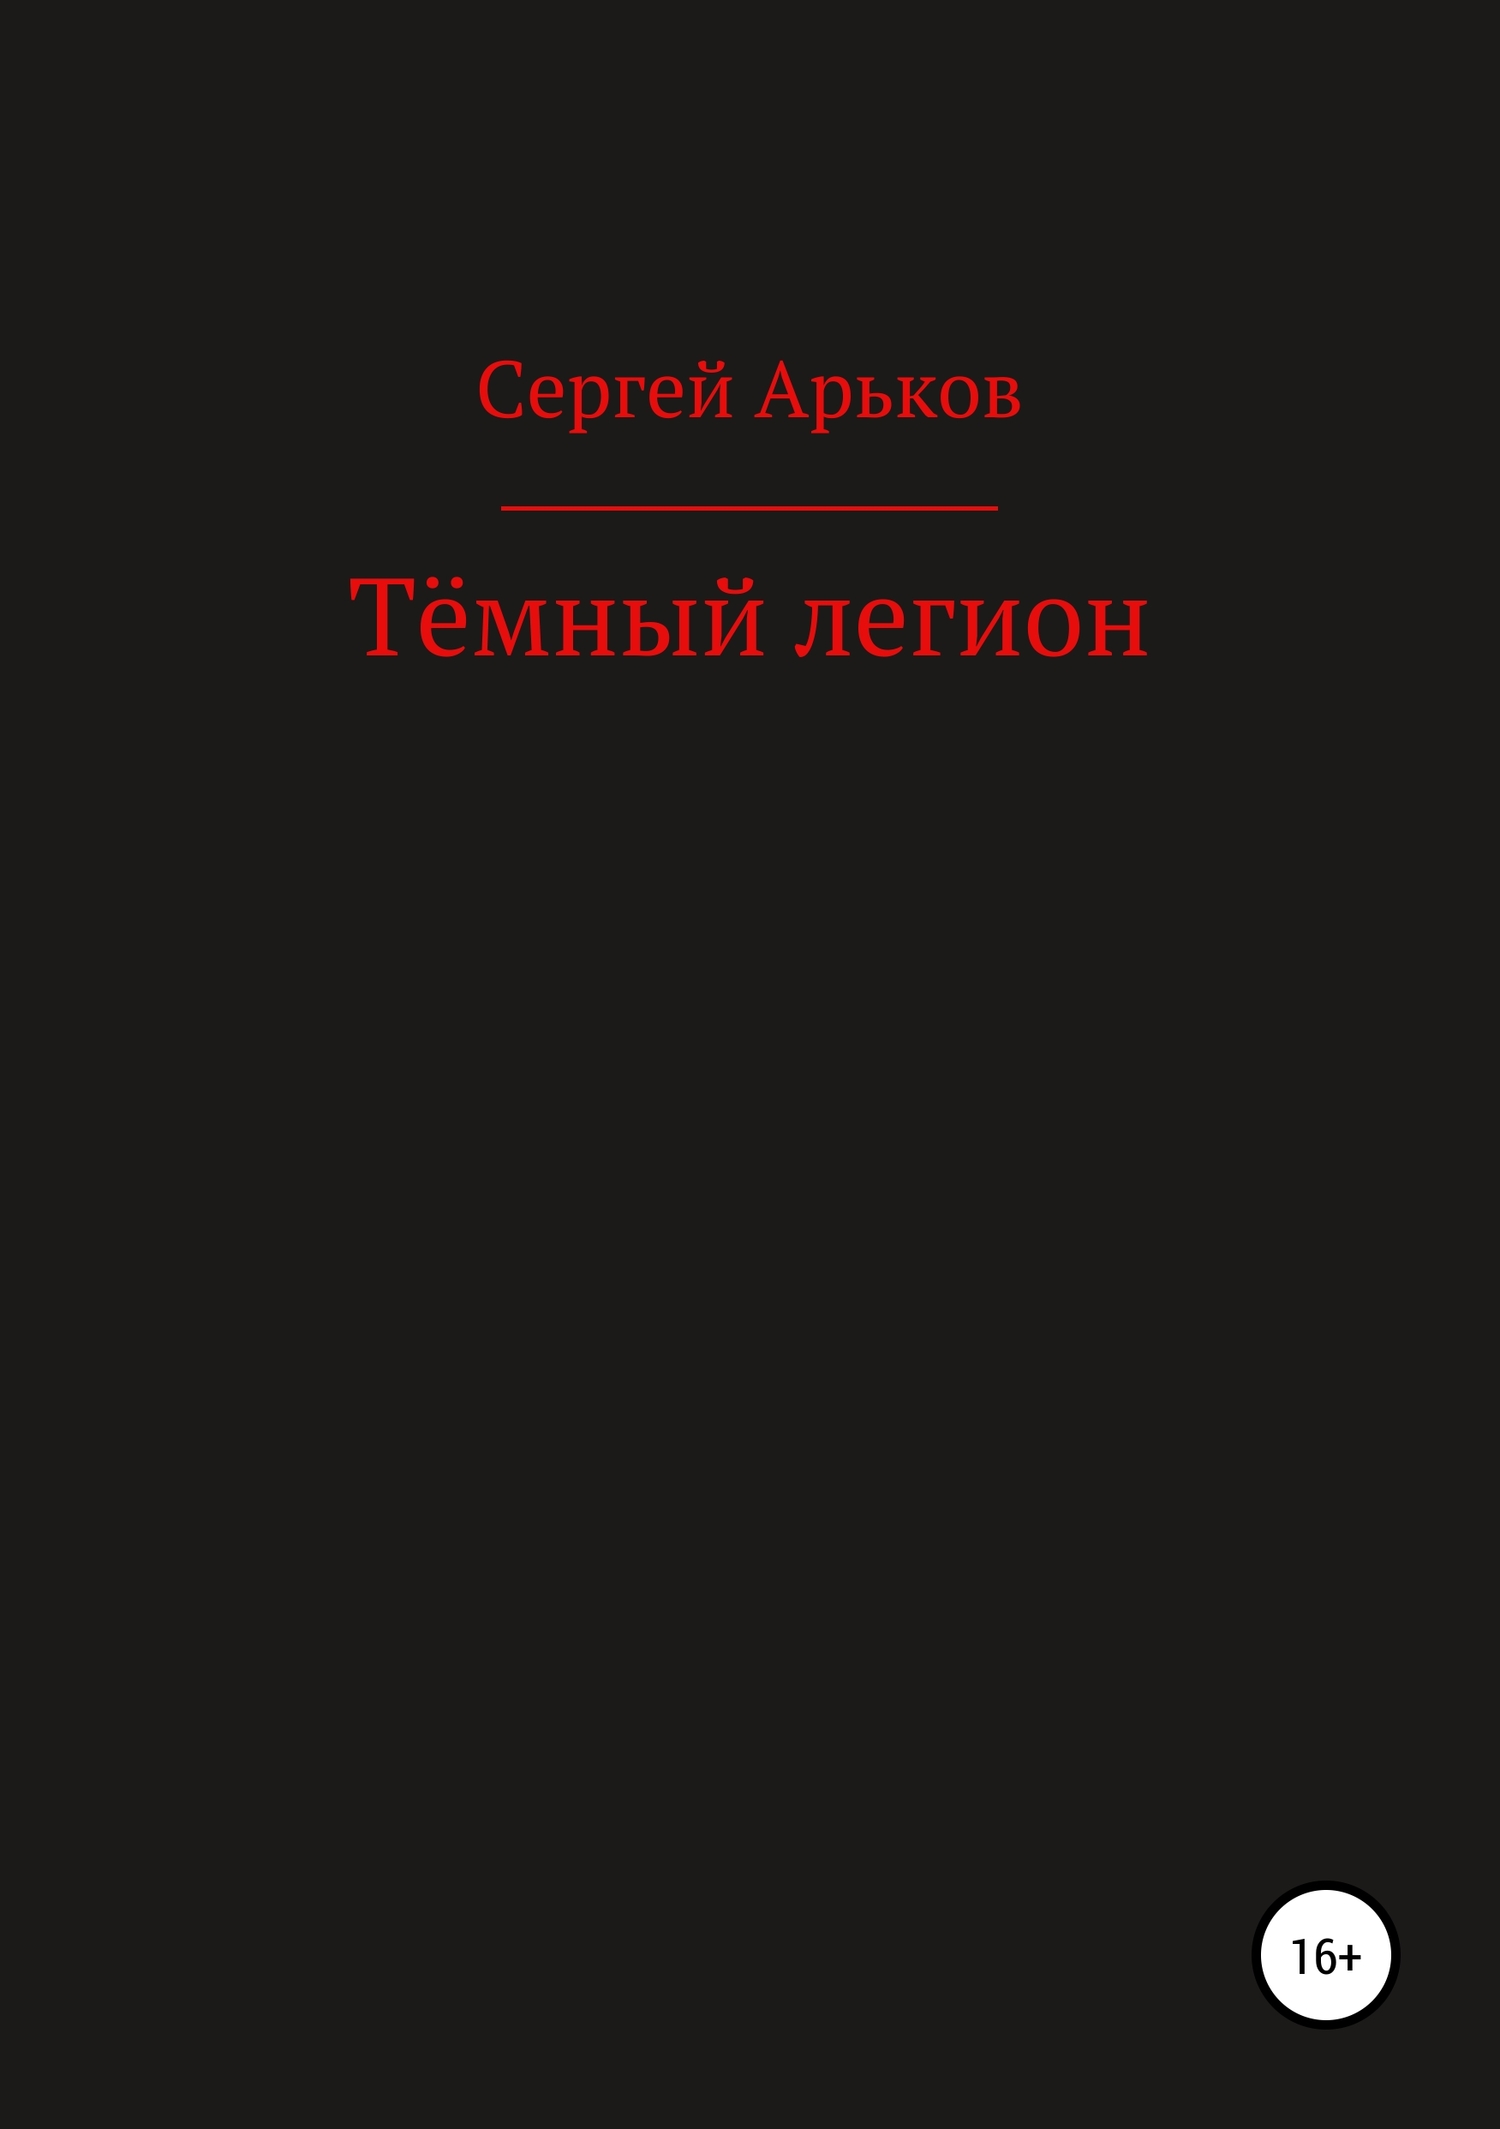 Арьков Сергей - Тёмный легион скачать бесплатно